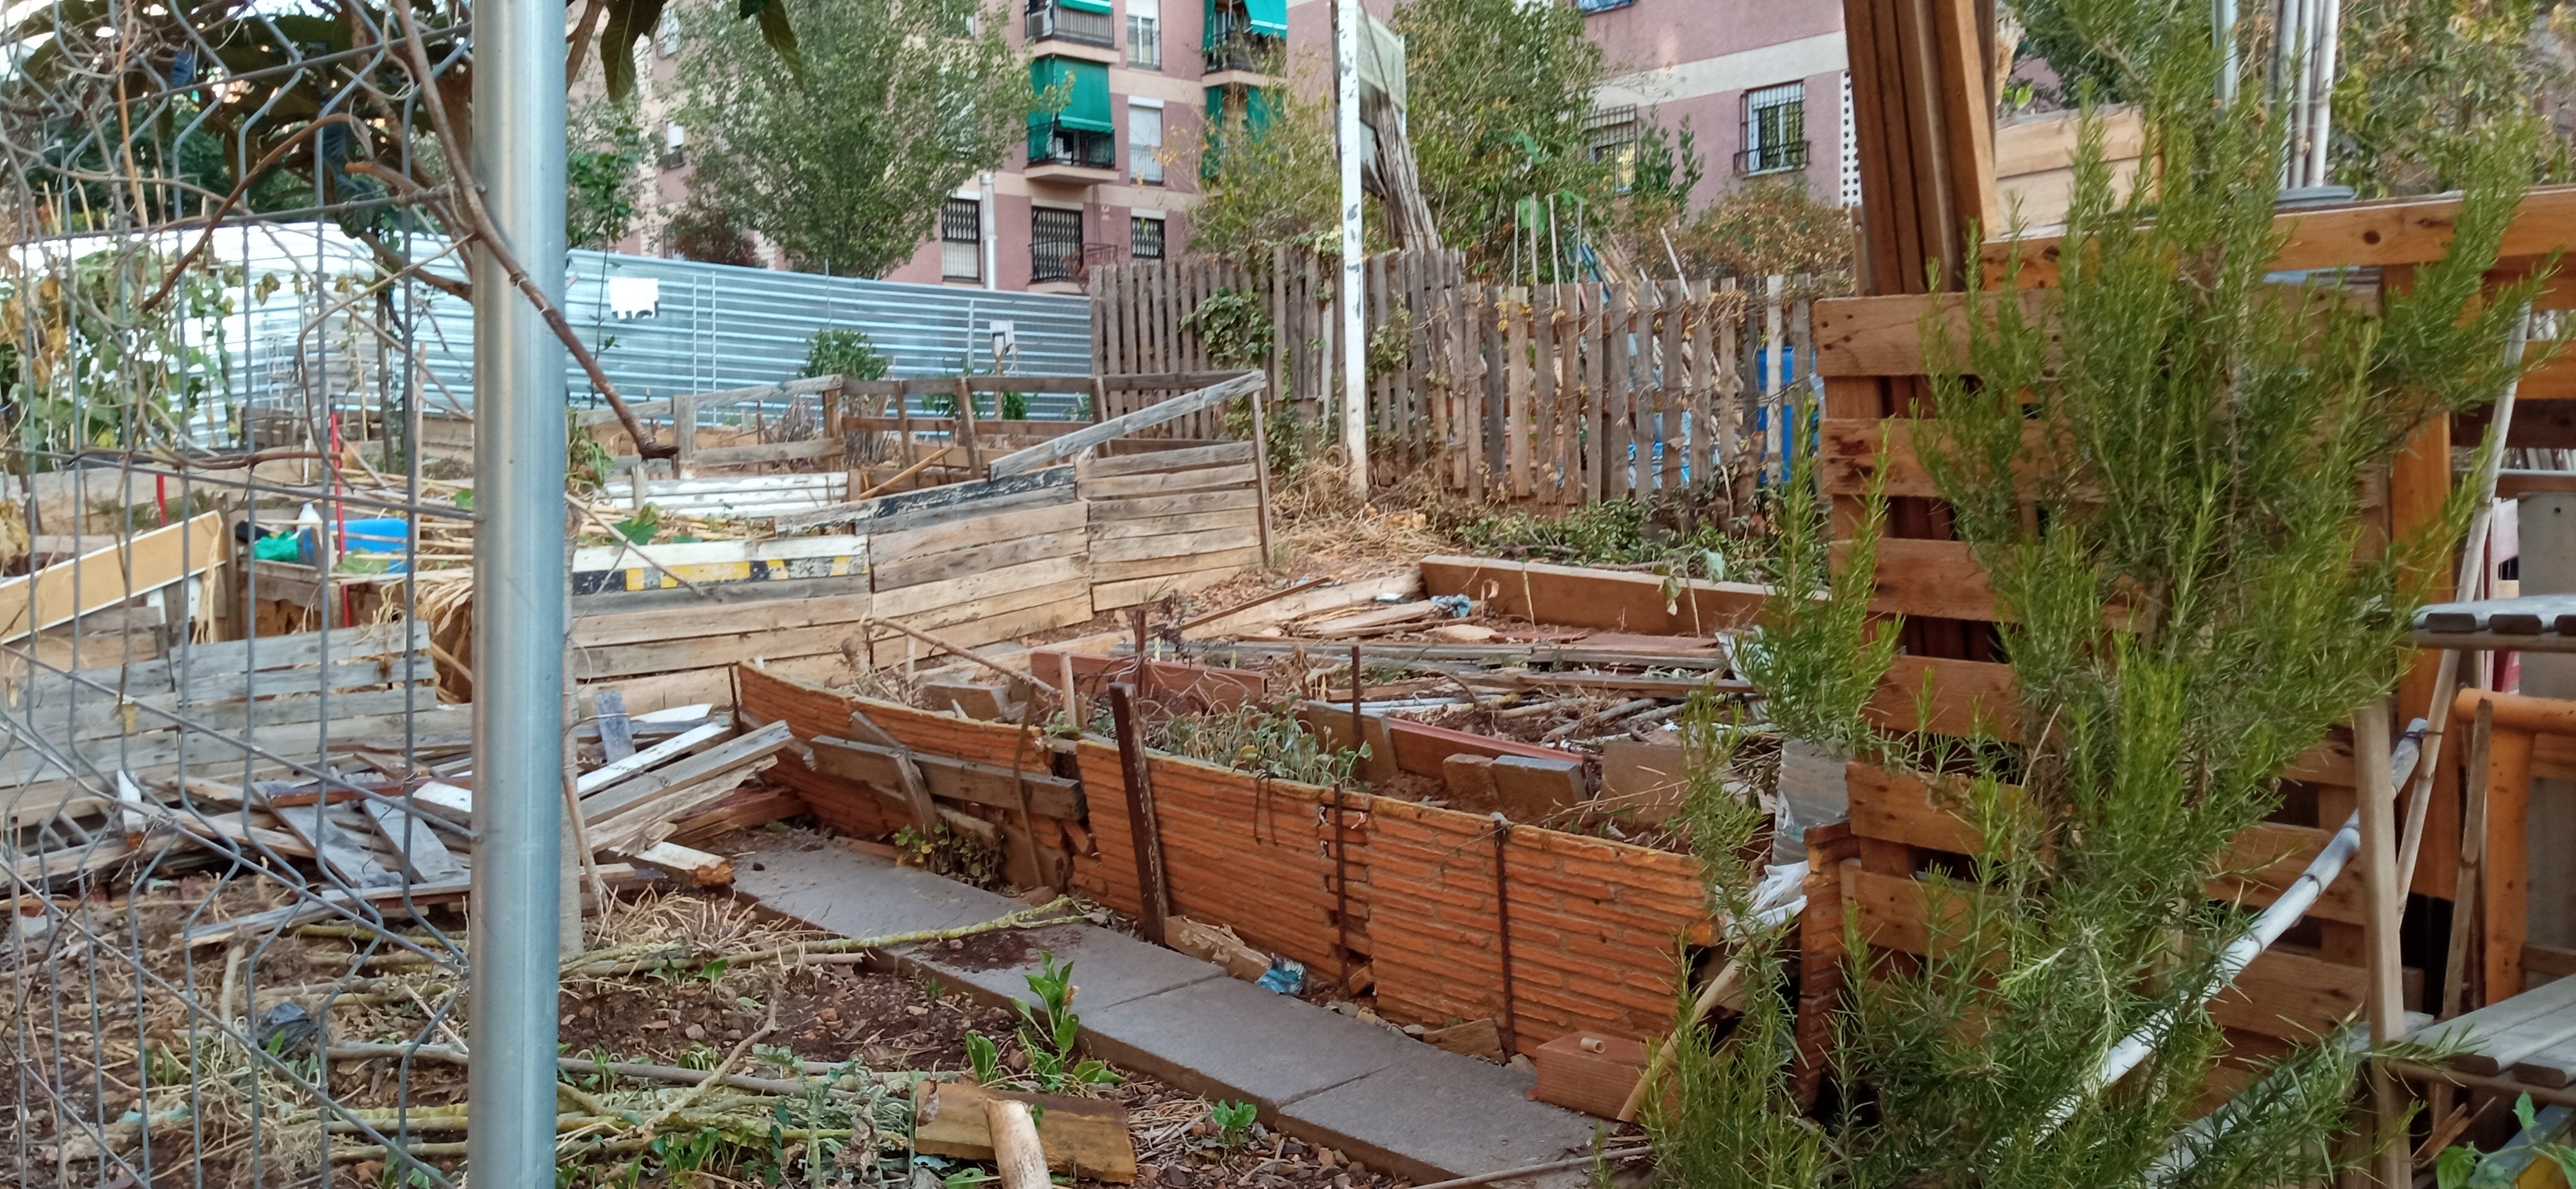 Els horts de la Maladeta, devastats per construir-hi pisos